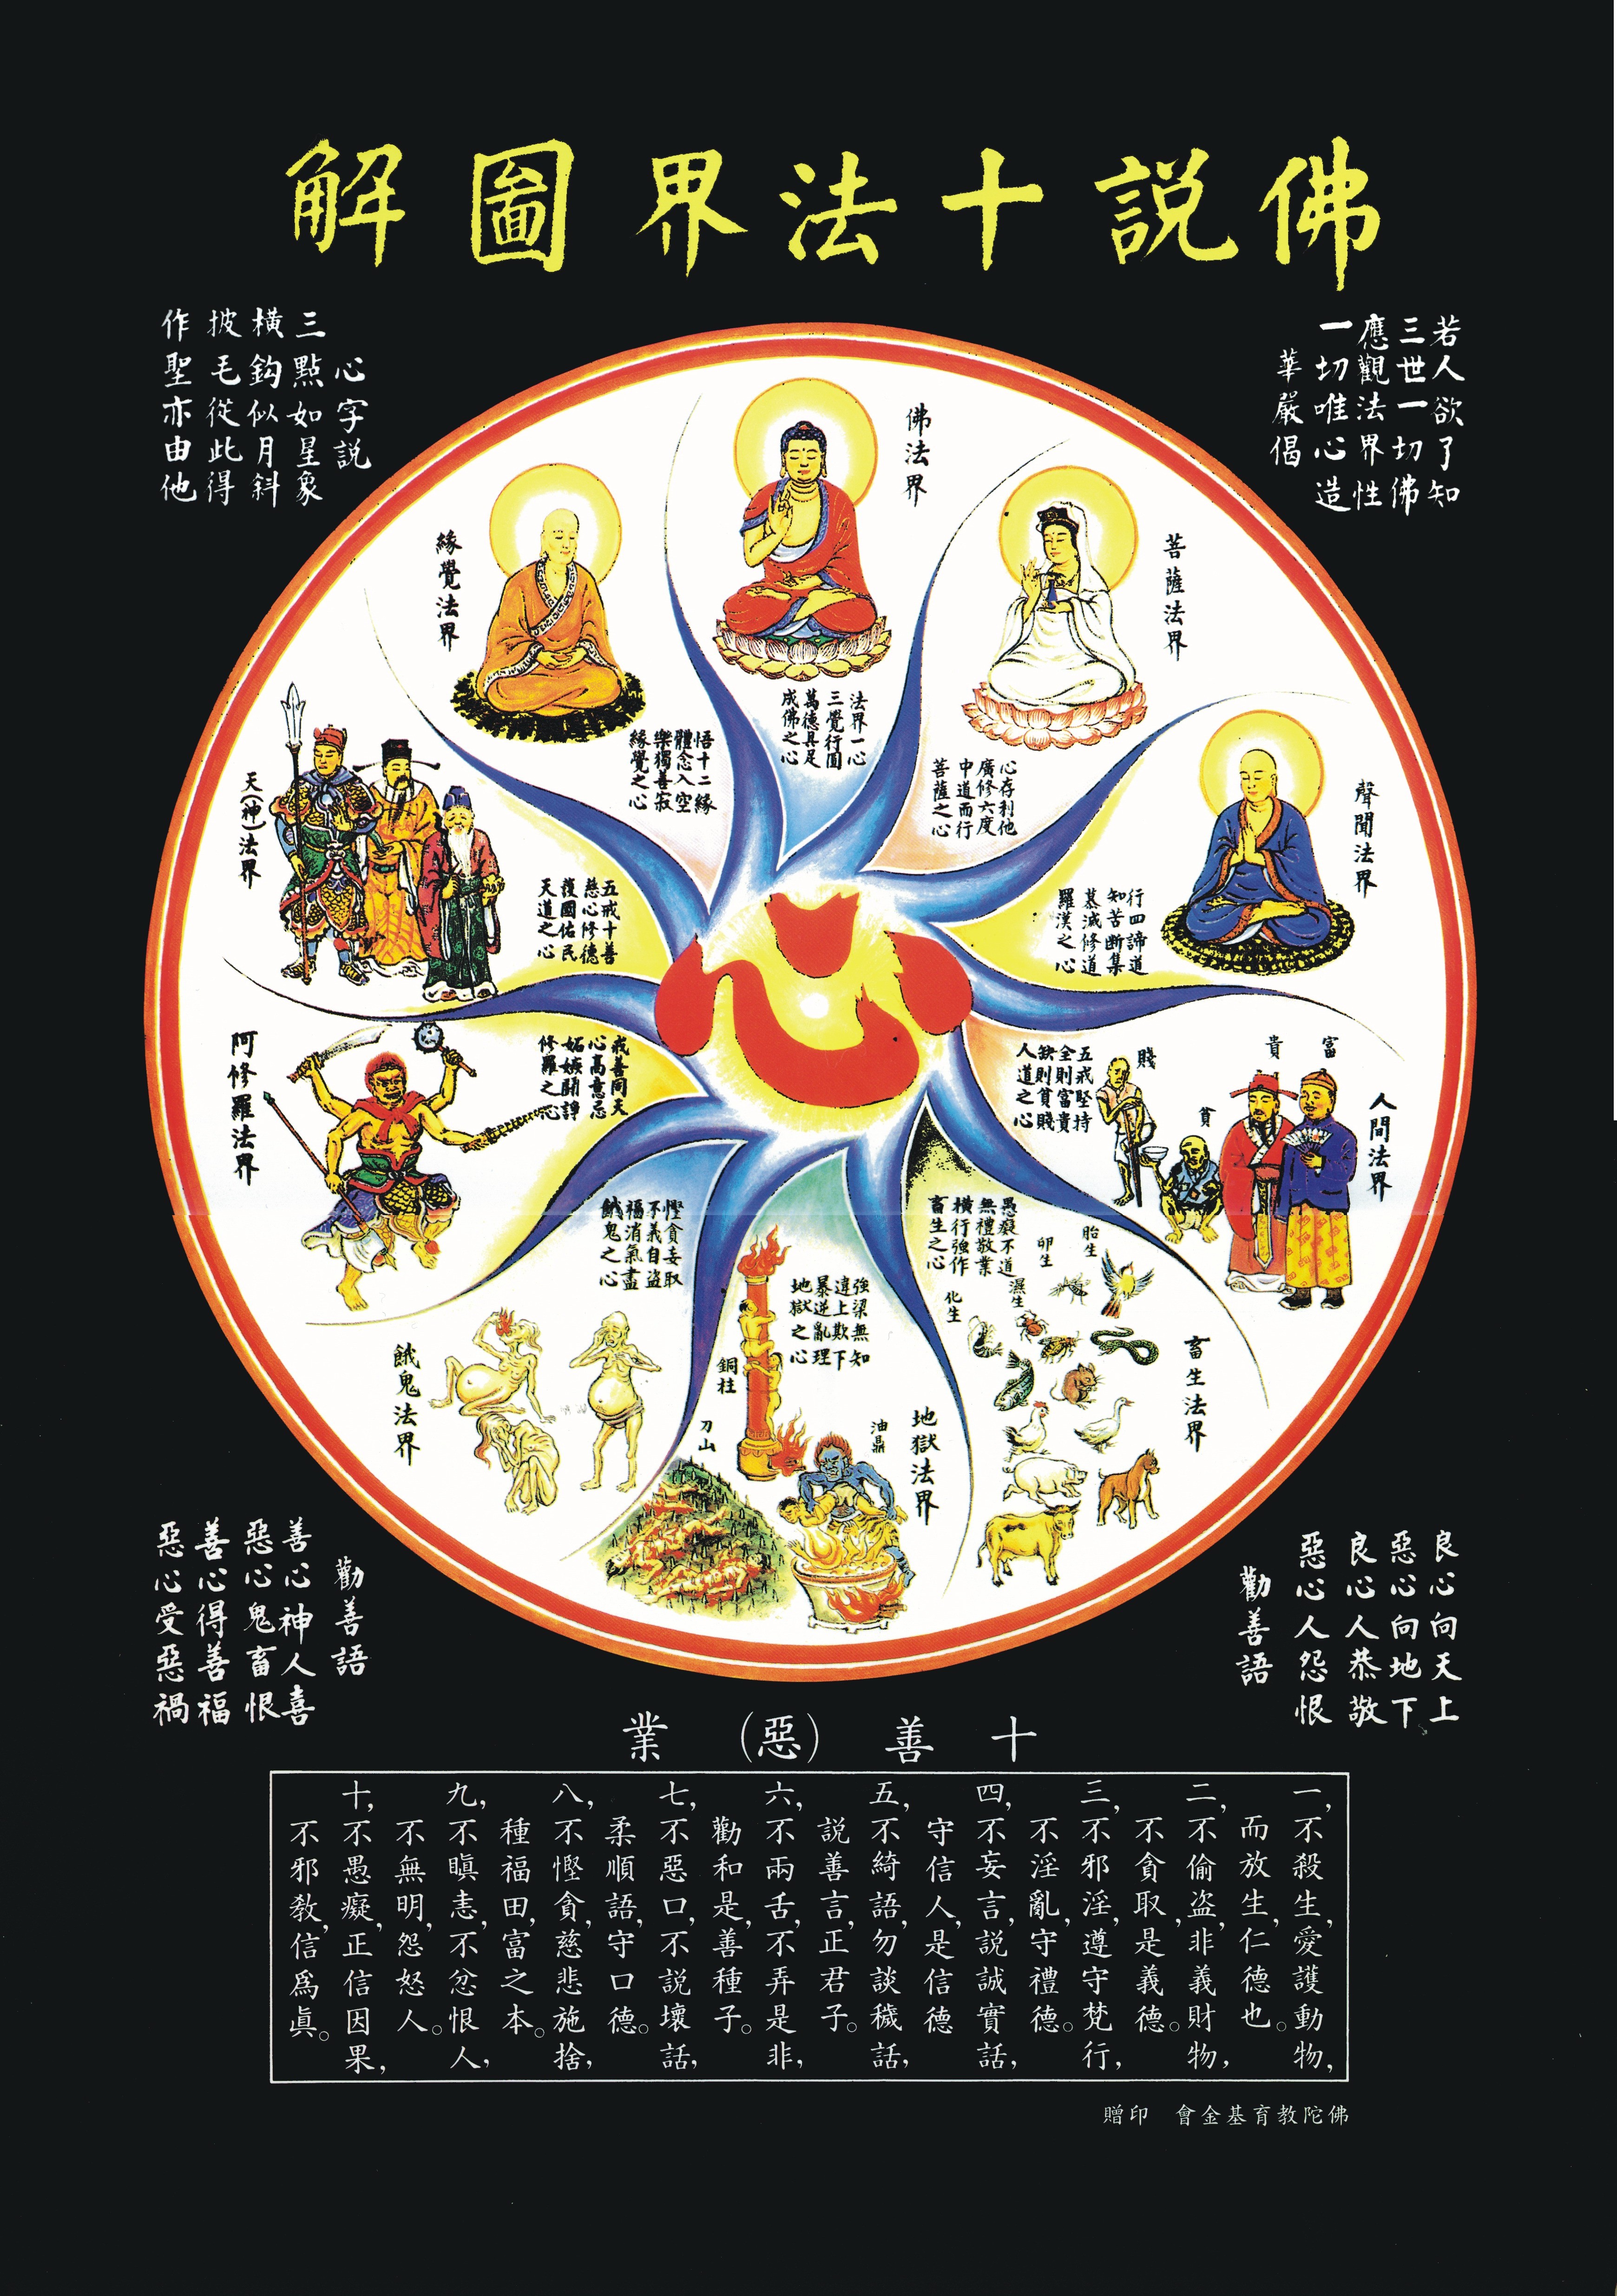 佛教宇宙观图解|佛说大千世界安立示意草图 (48张手绘